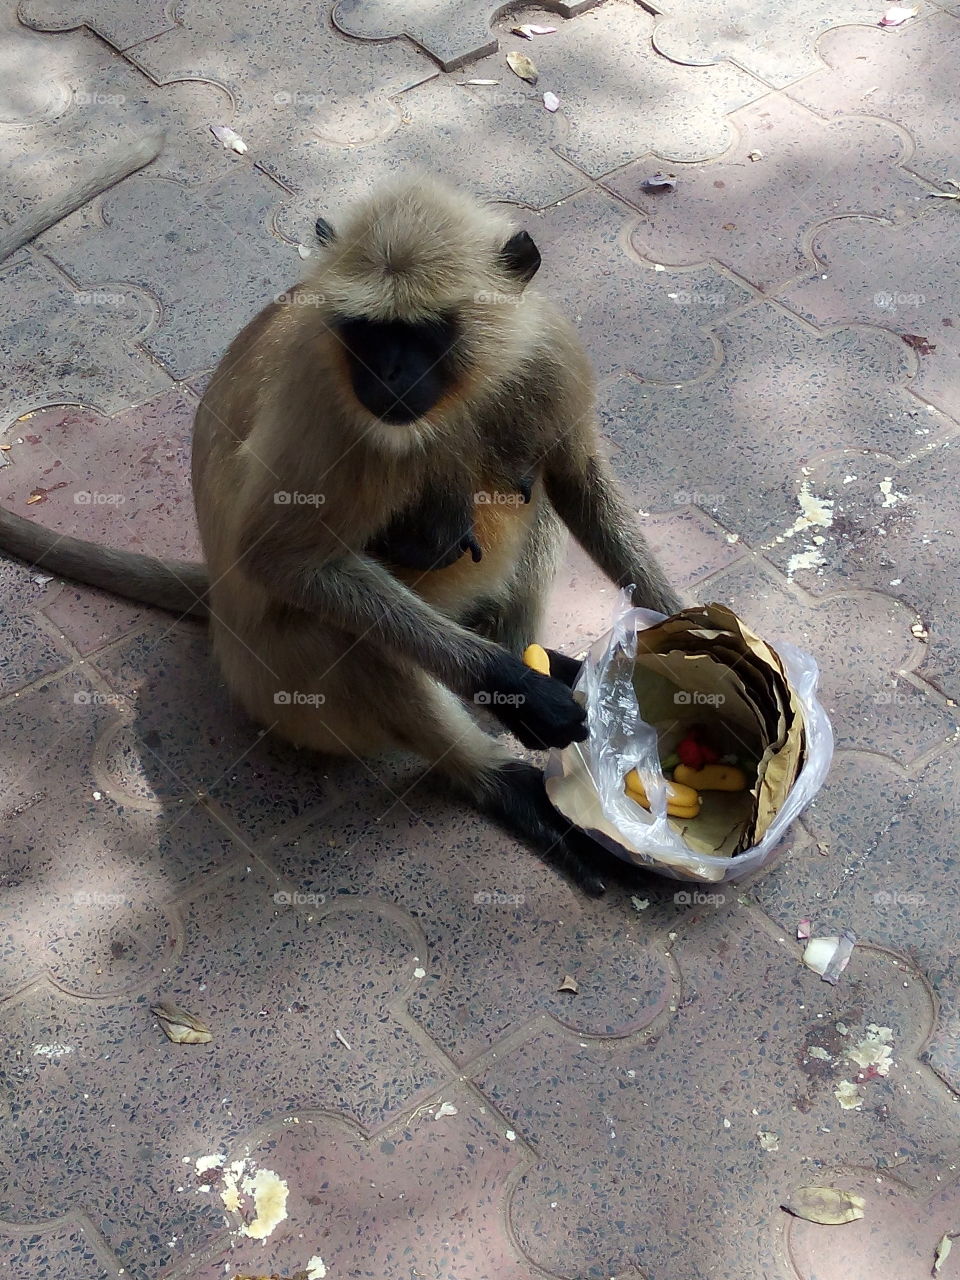 Monkey eating food on street